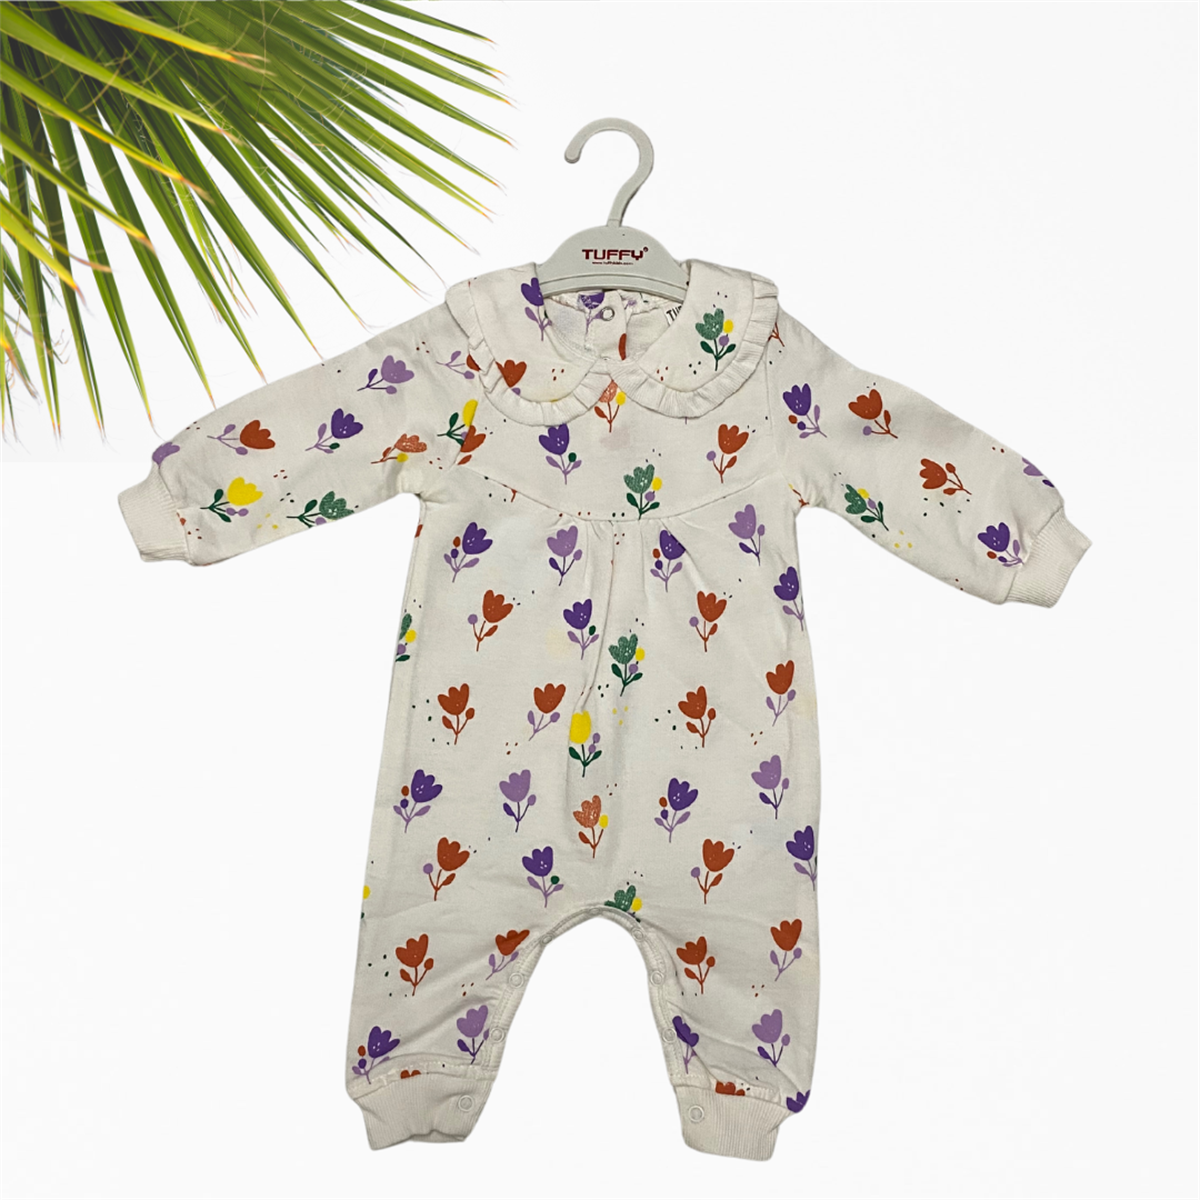 Bebek Giyim Markaları - Kız ve Erkek Bebek Kıyafetleri, Çocuk Giyim